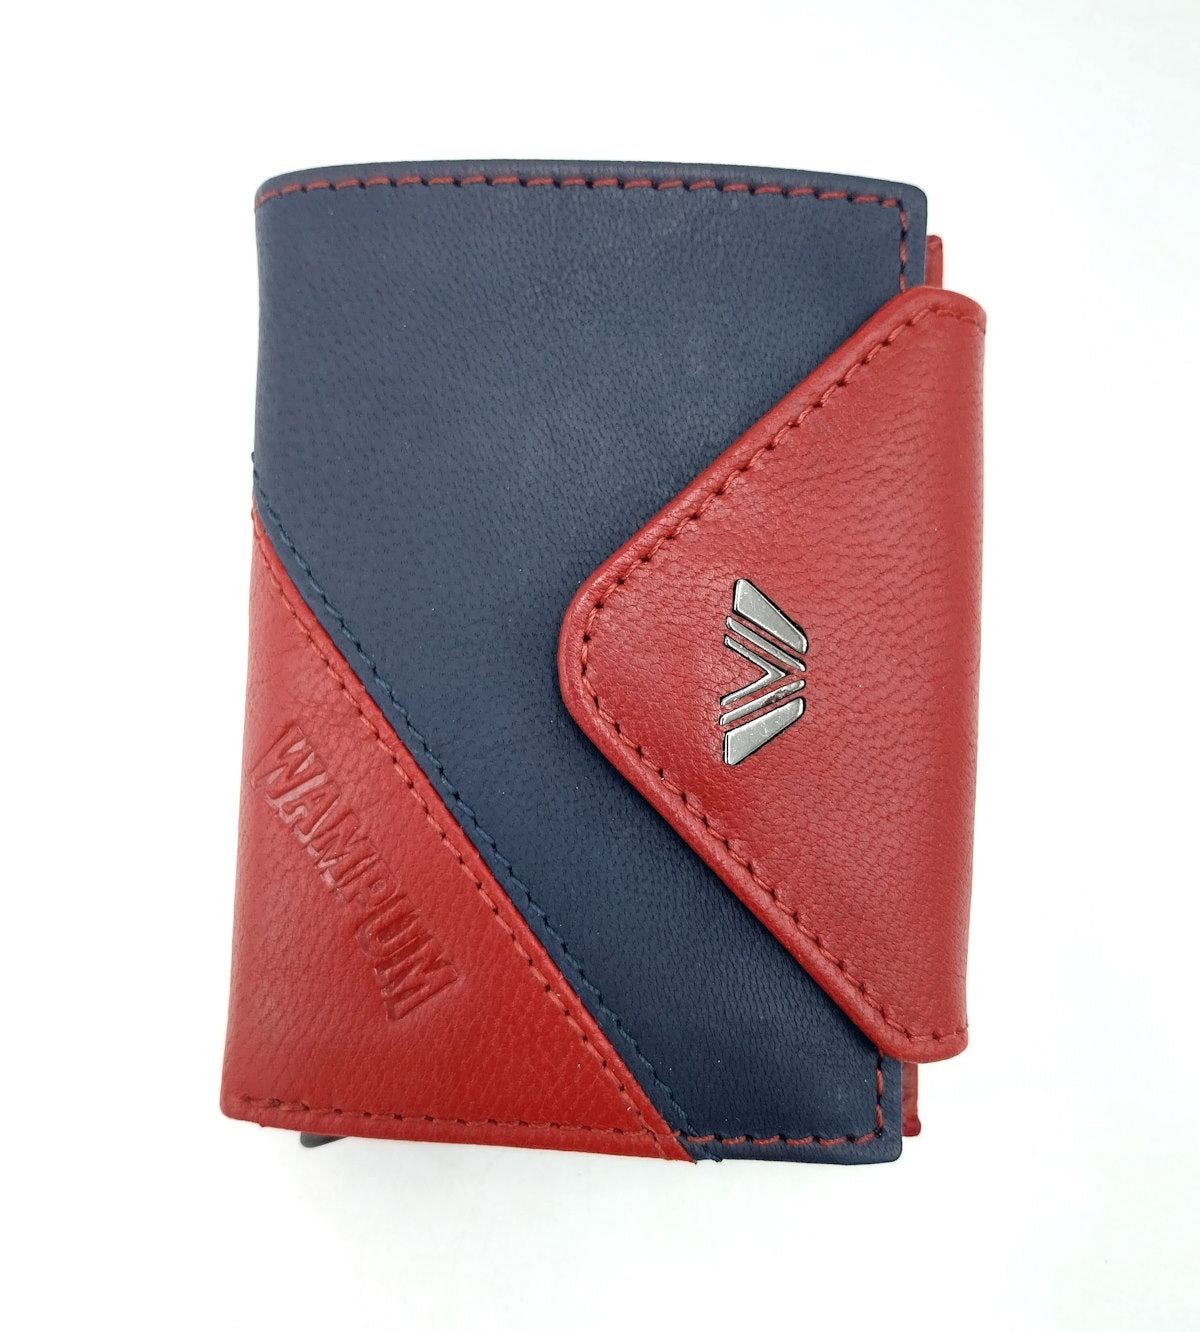 Genuine leather wallet, Wampum, art. pdk397-92